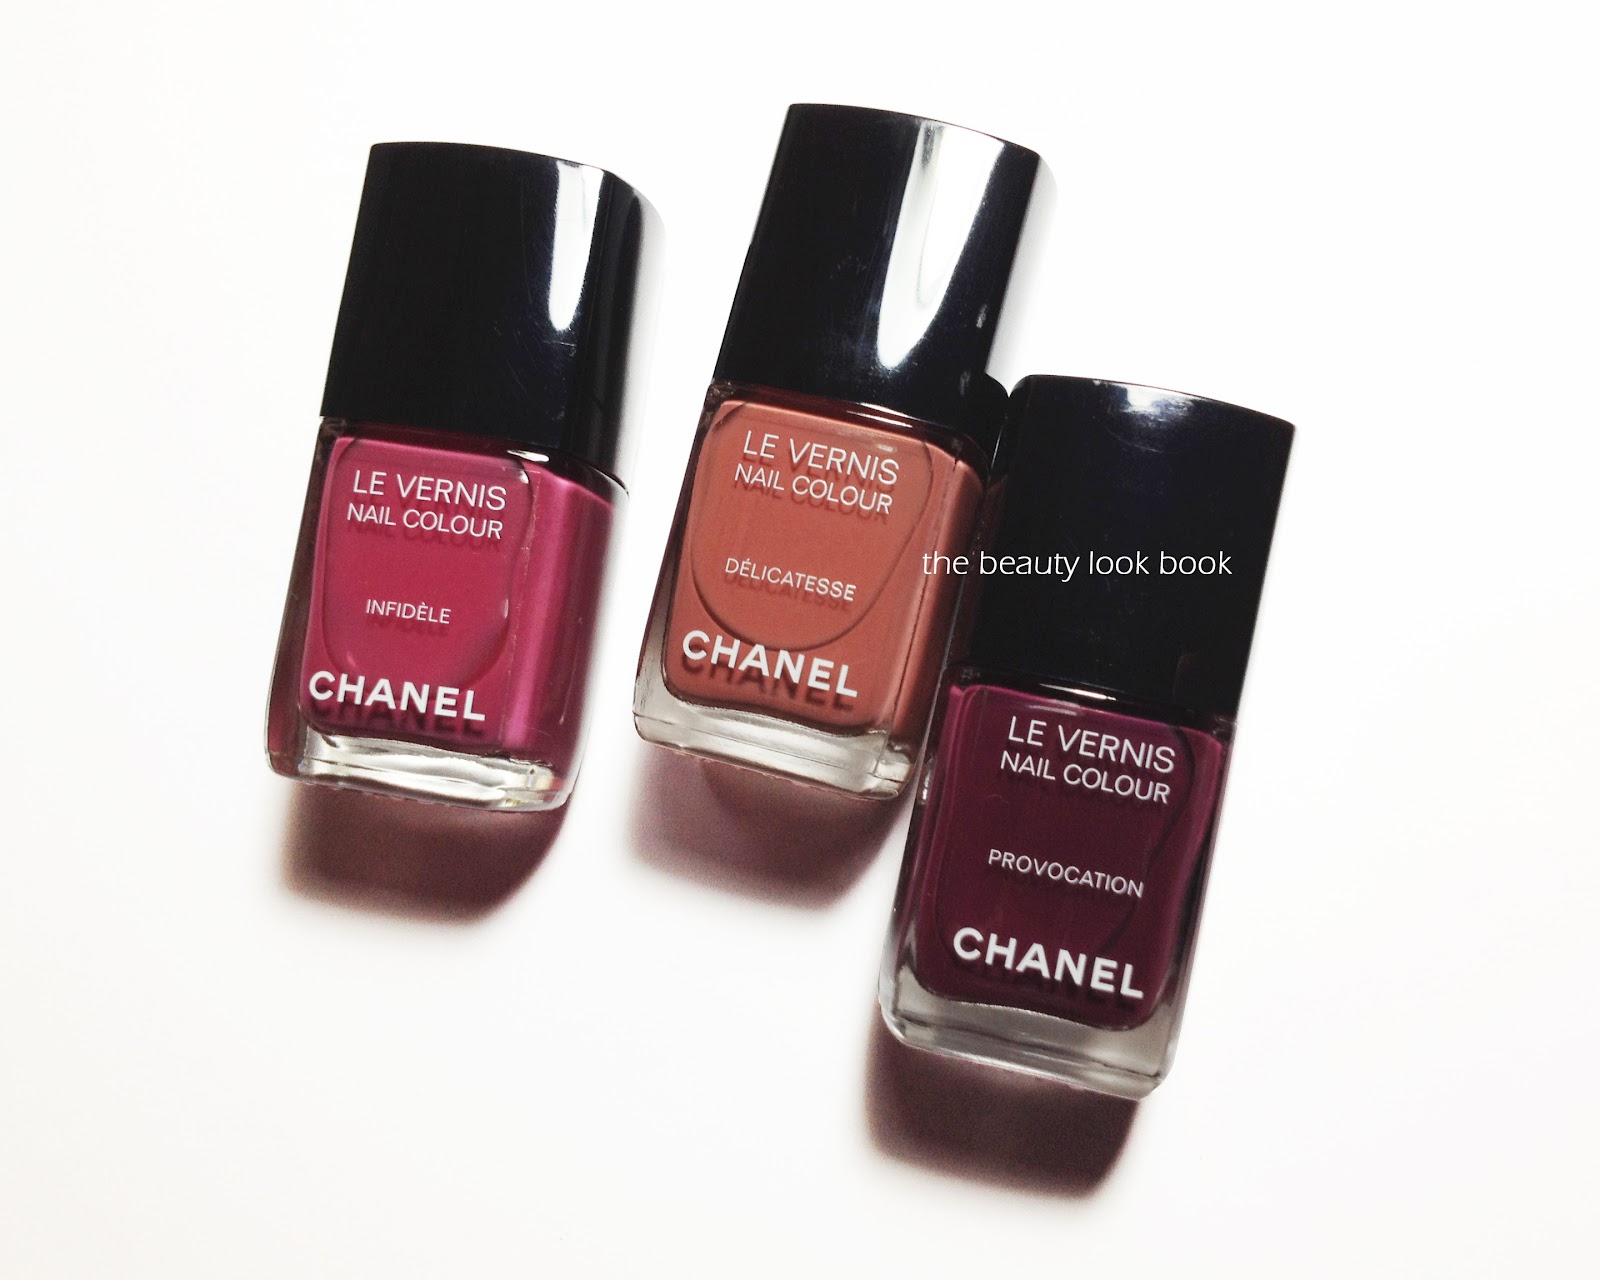 I'm Plum Crazy About Chanel's Provocation Le Vernis Nail Colour